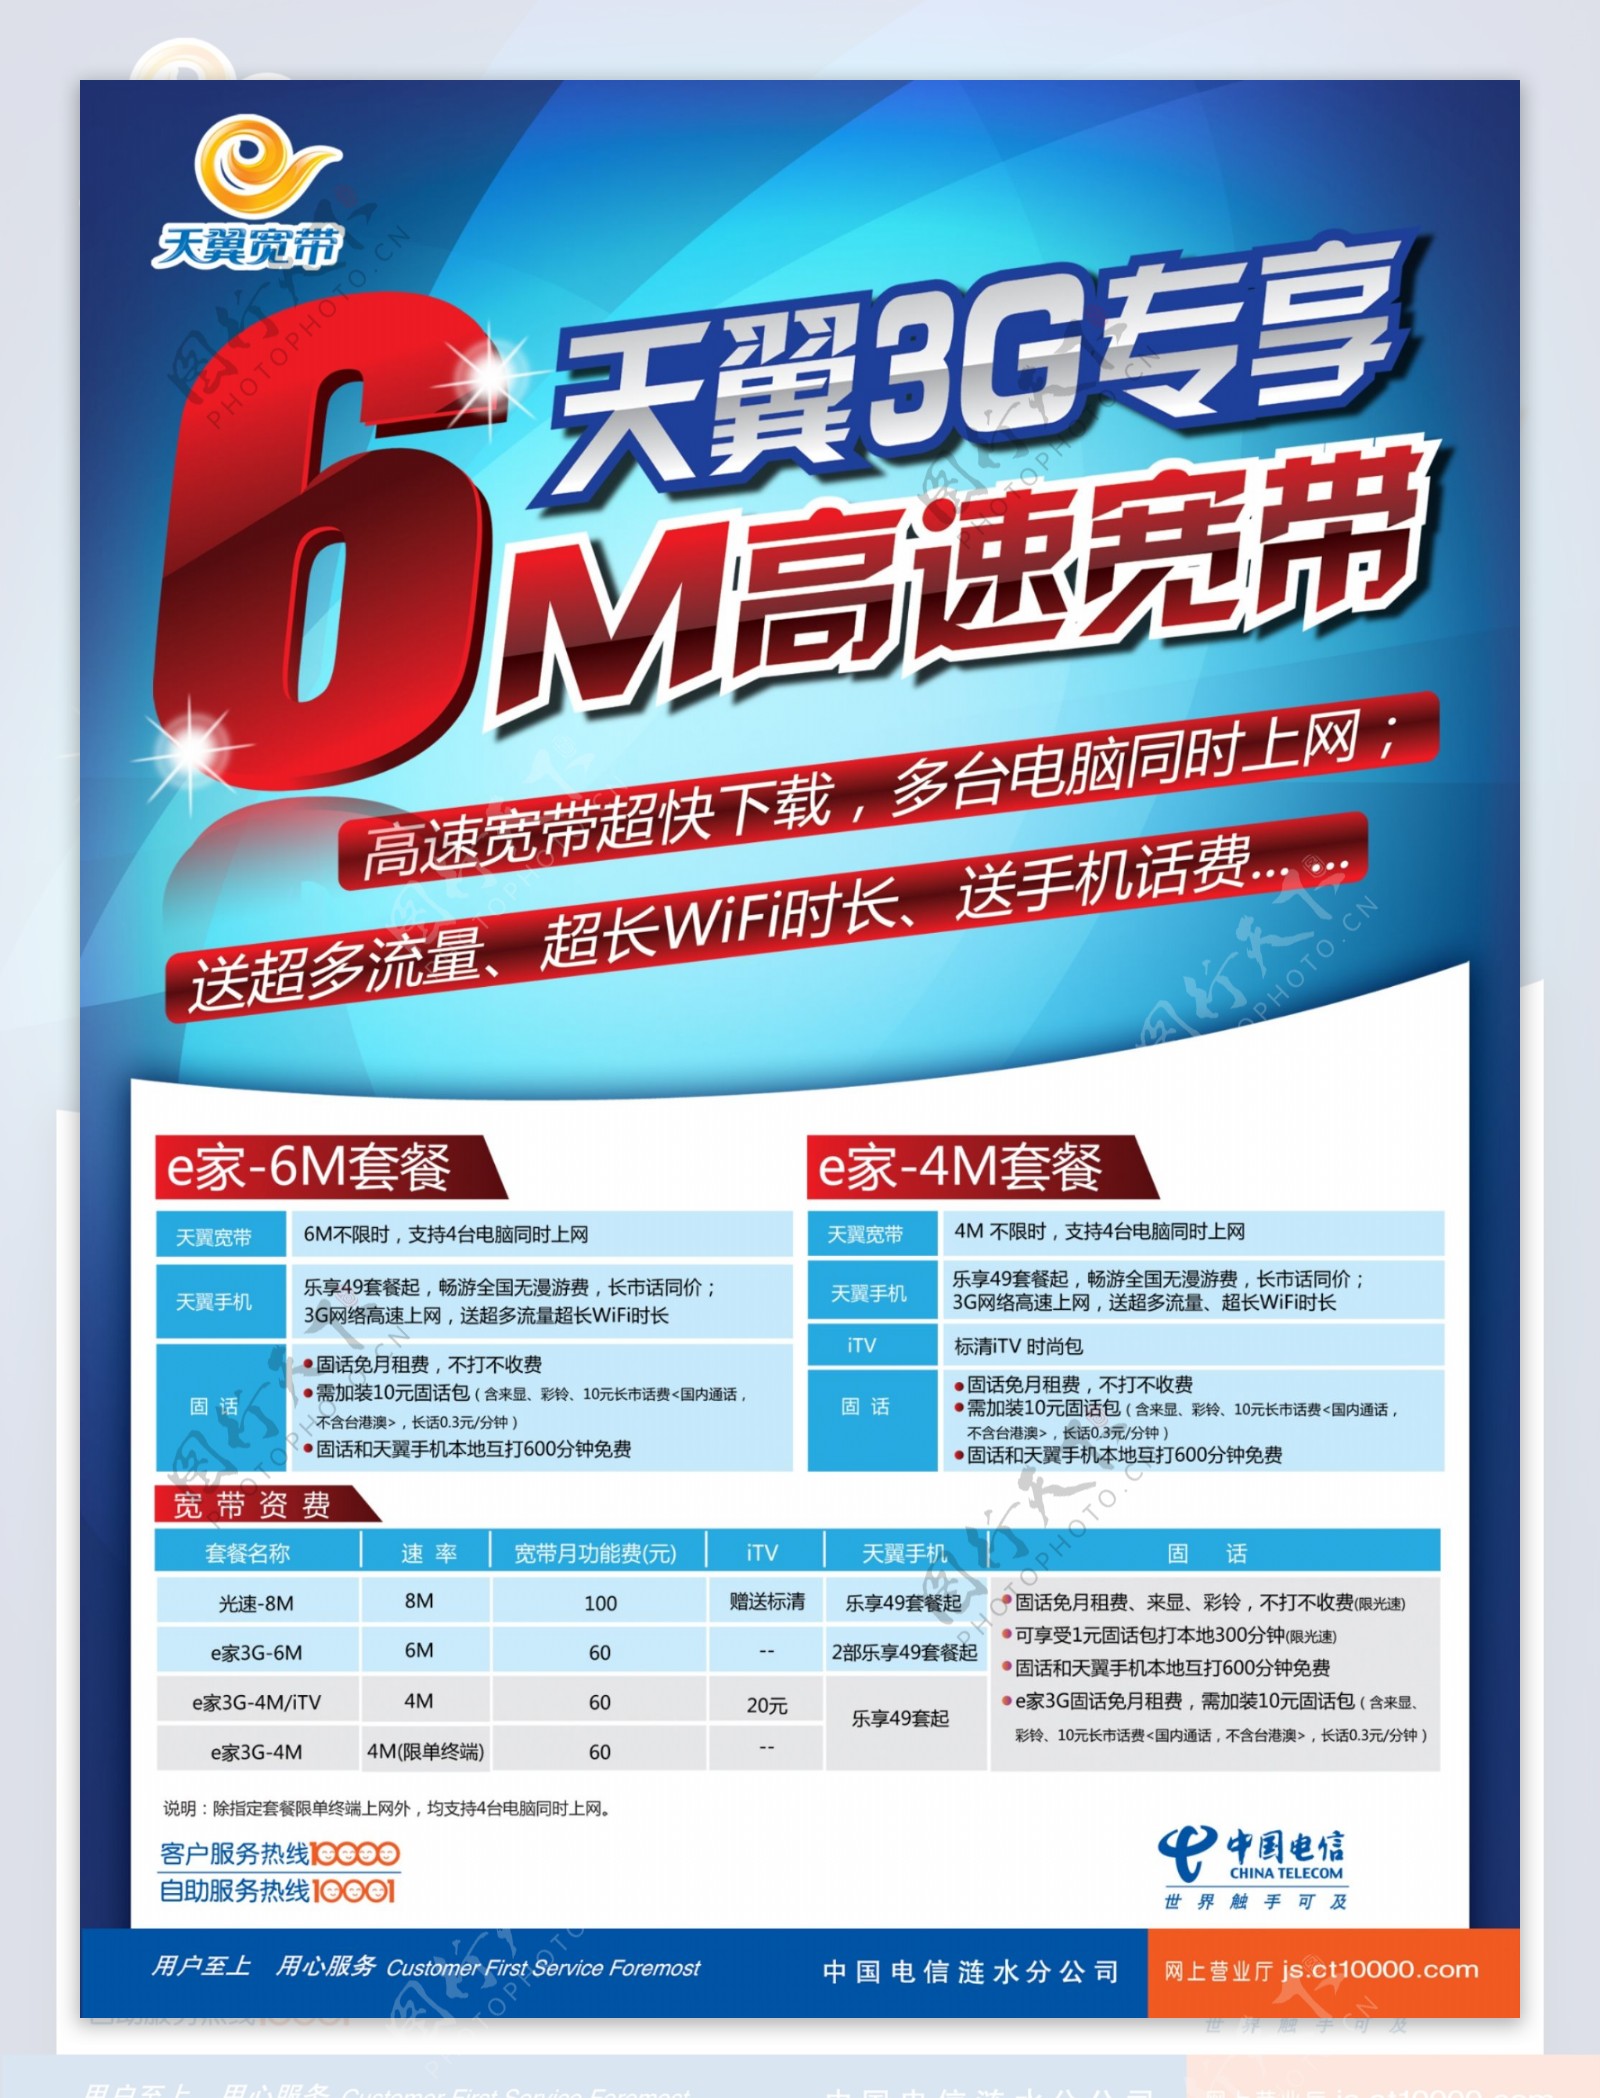 中国电信天翼3g专享宽带图片